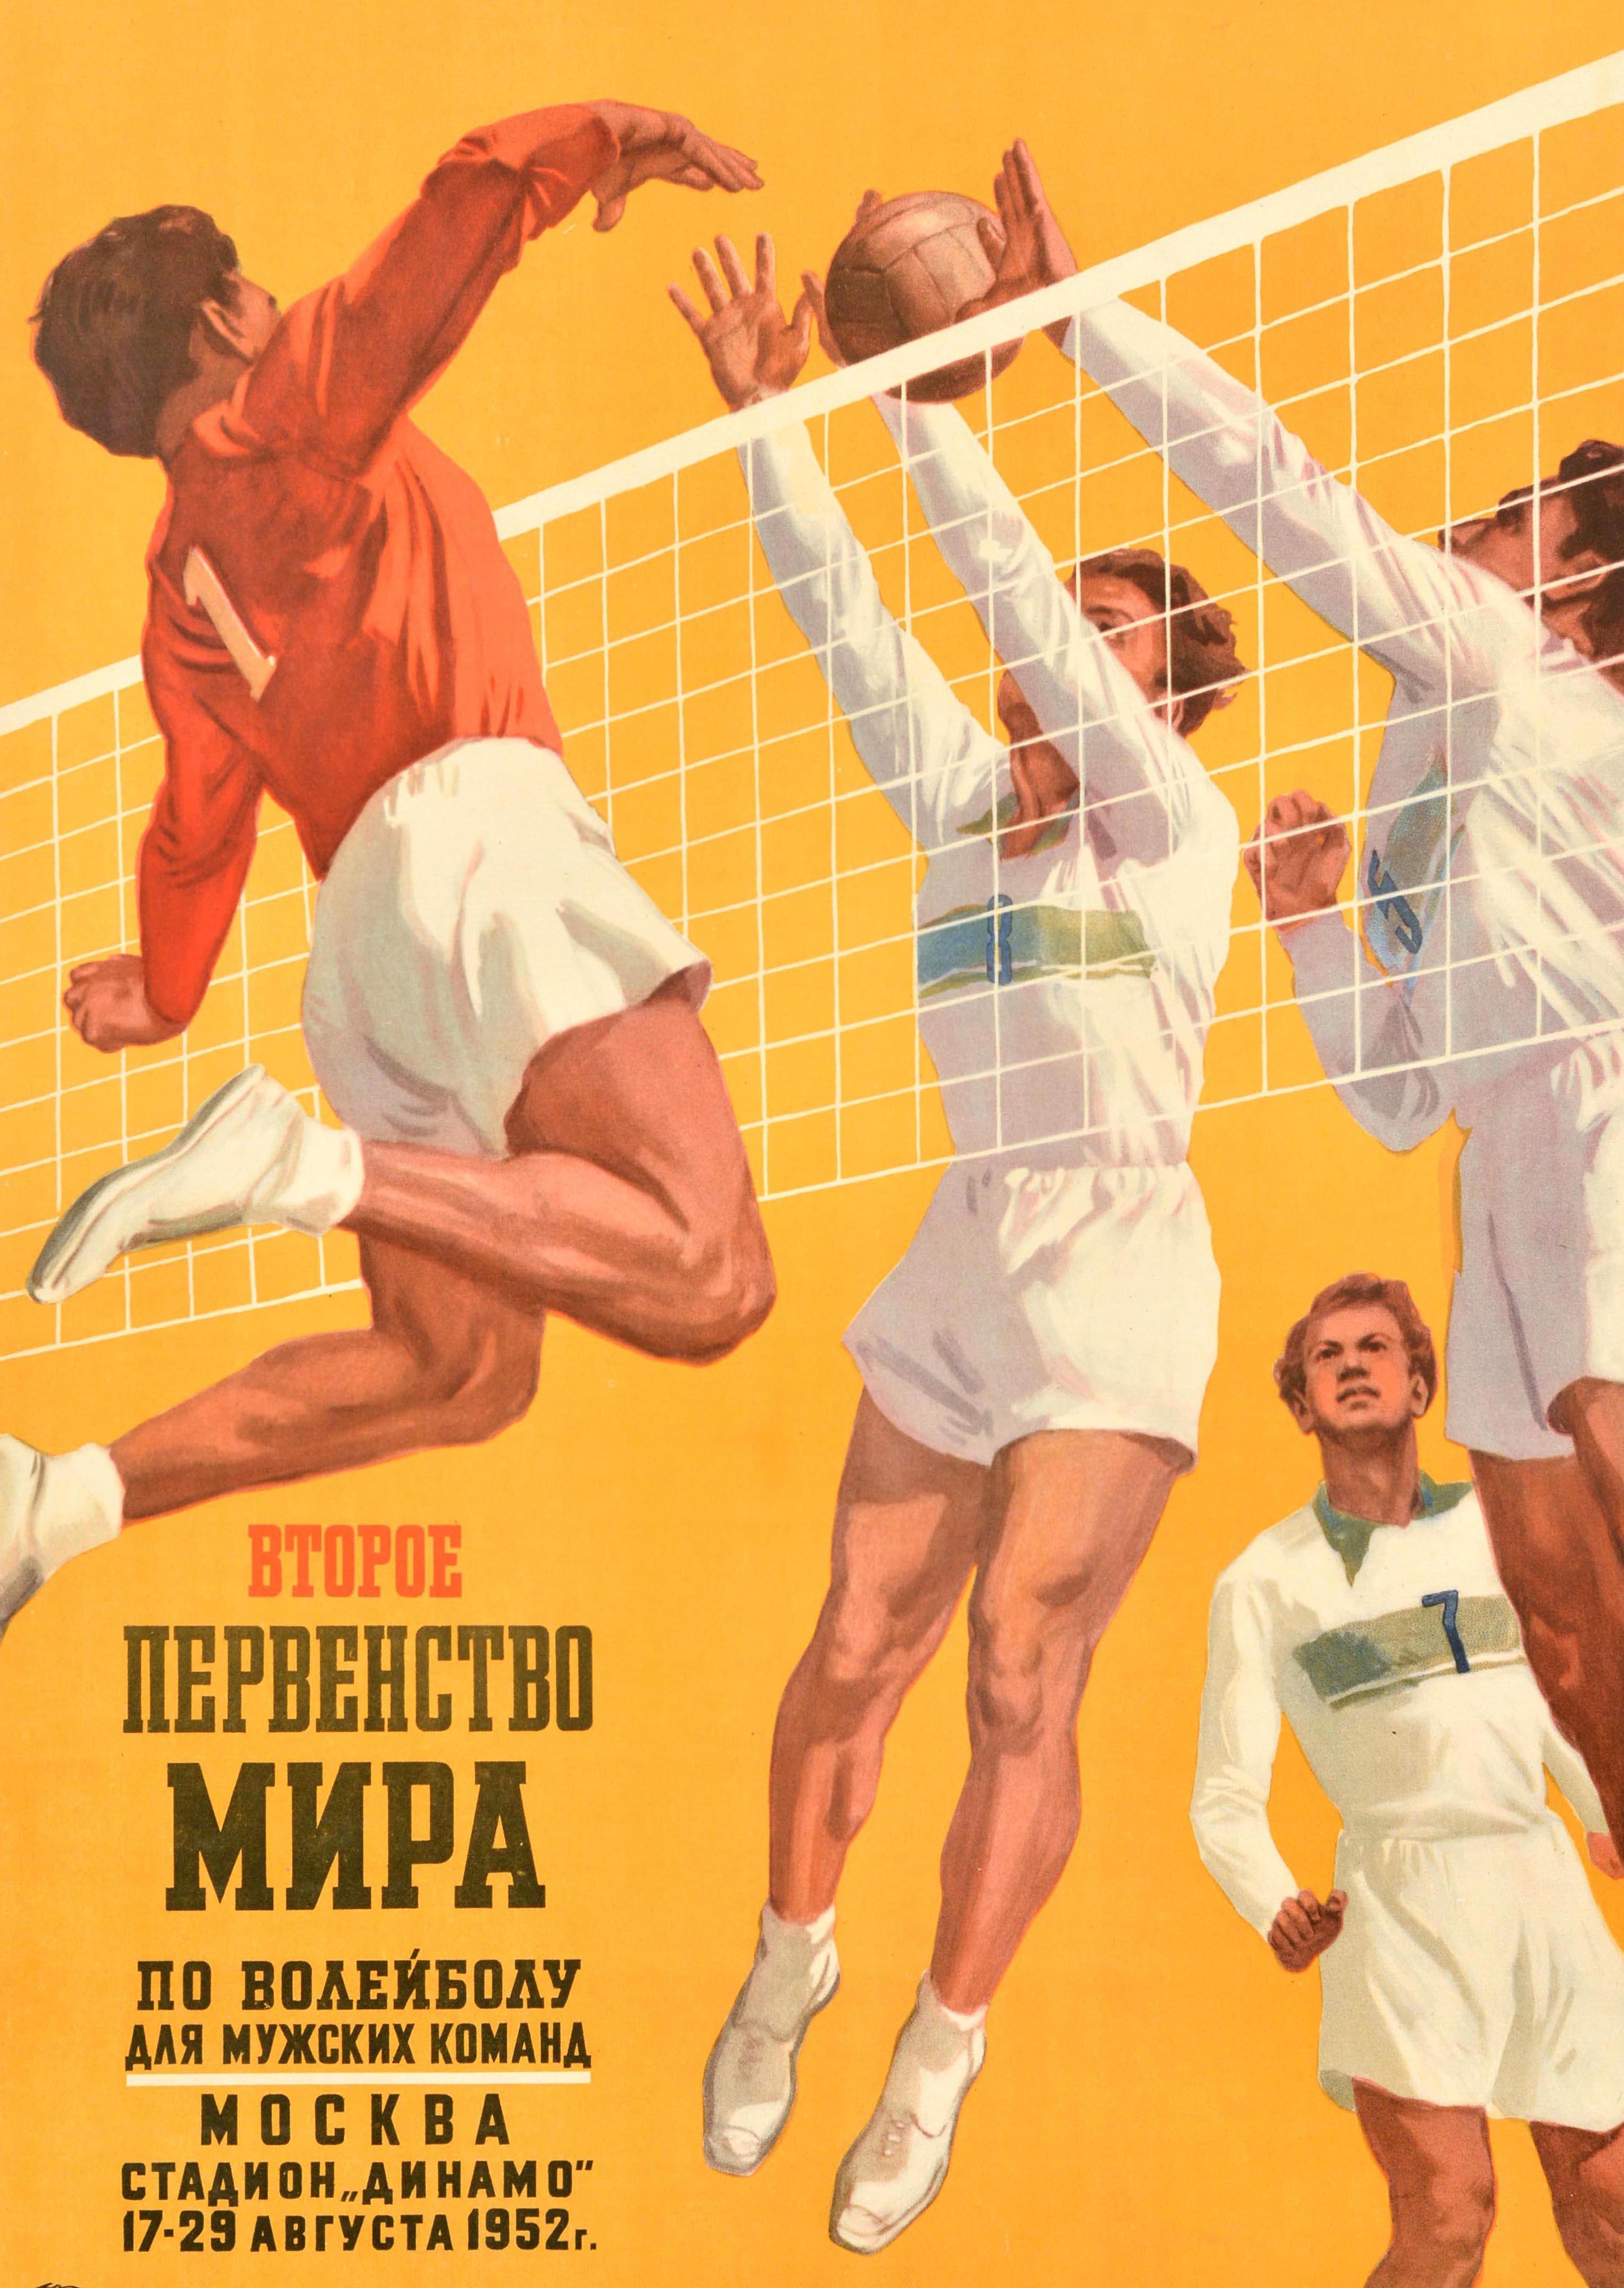 Originales sowjetisches Sportplakat, Volleyball-Wettbewerb, UdSSR, Moskau – Print von Unknown